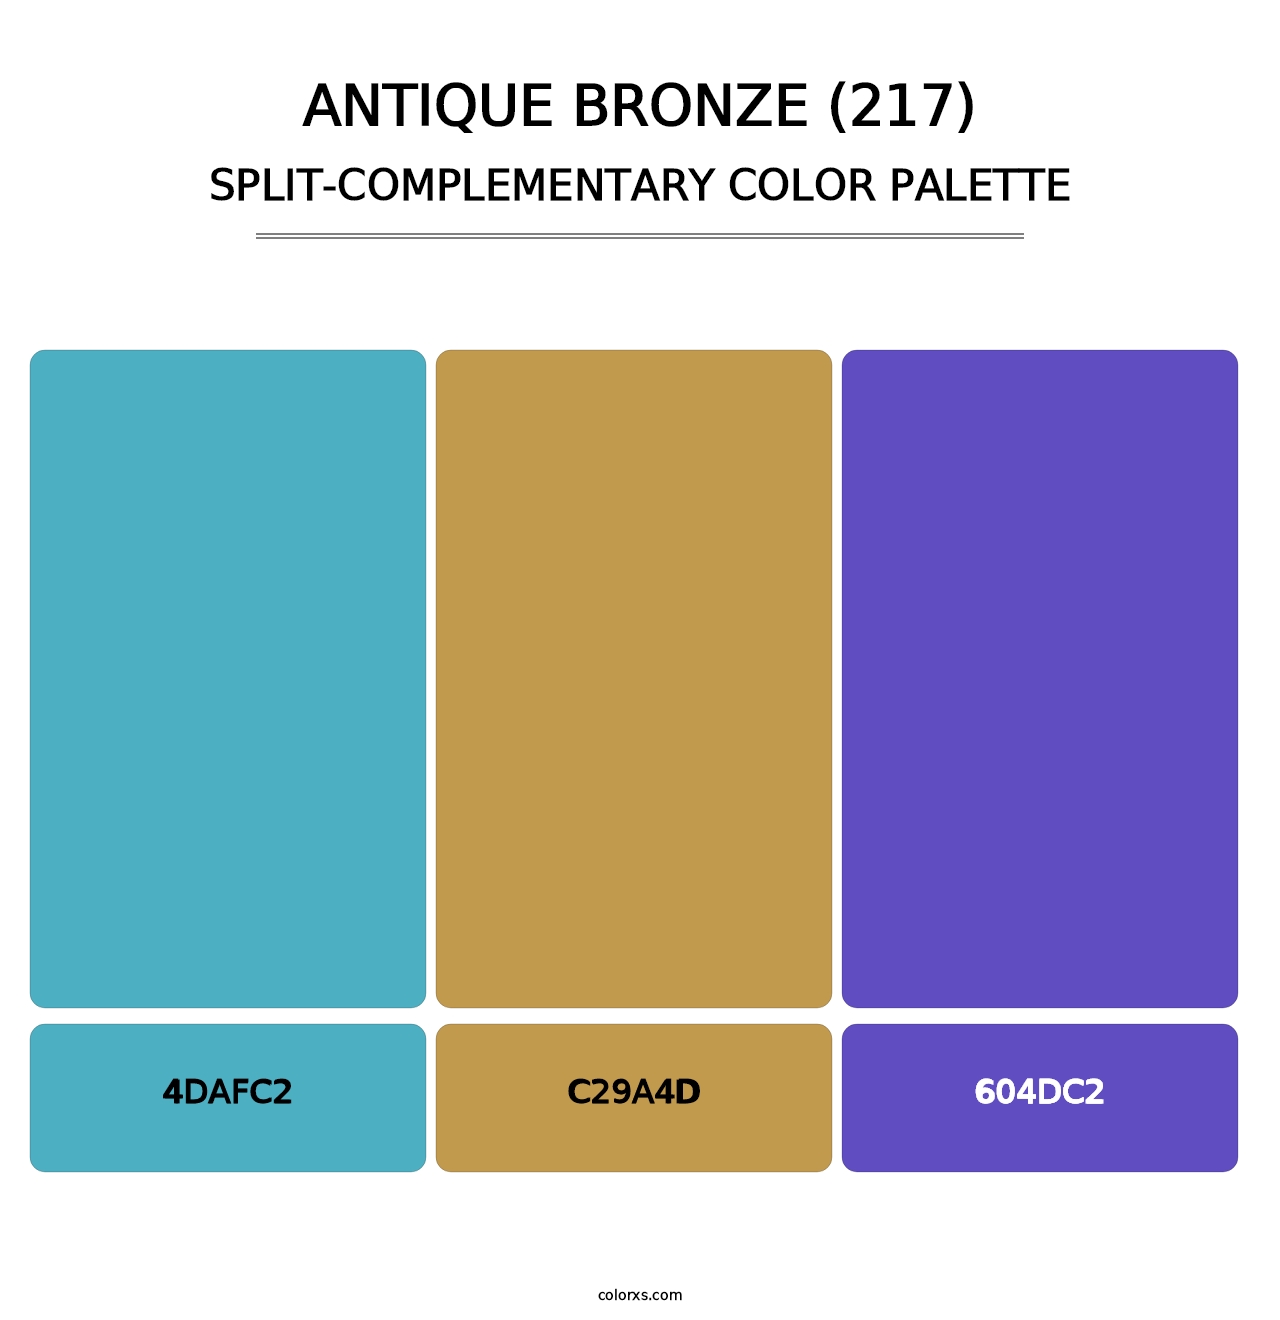 Antique Bronze (217) - Split-Complementary Color Palette